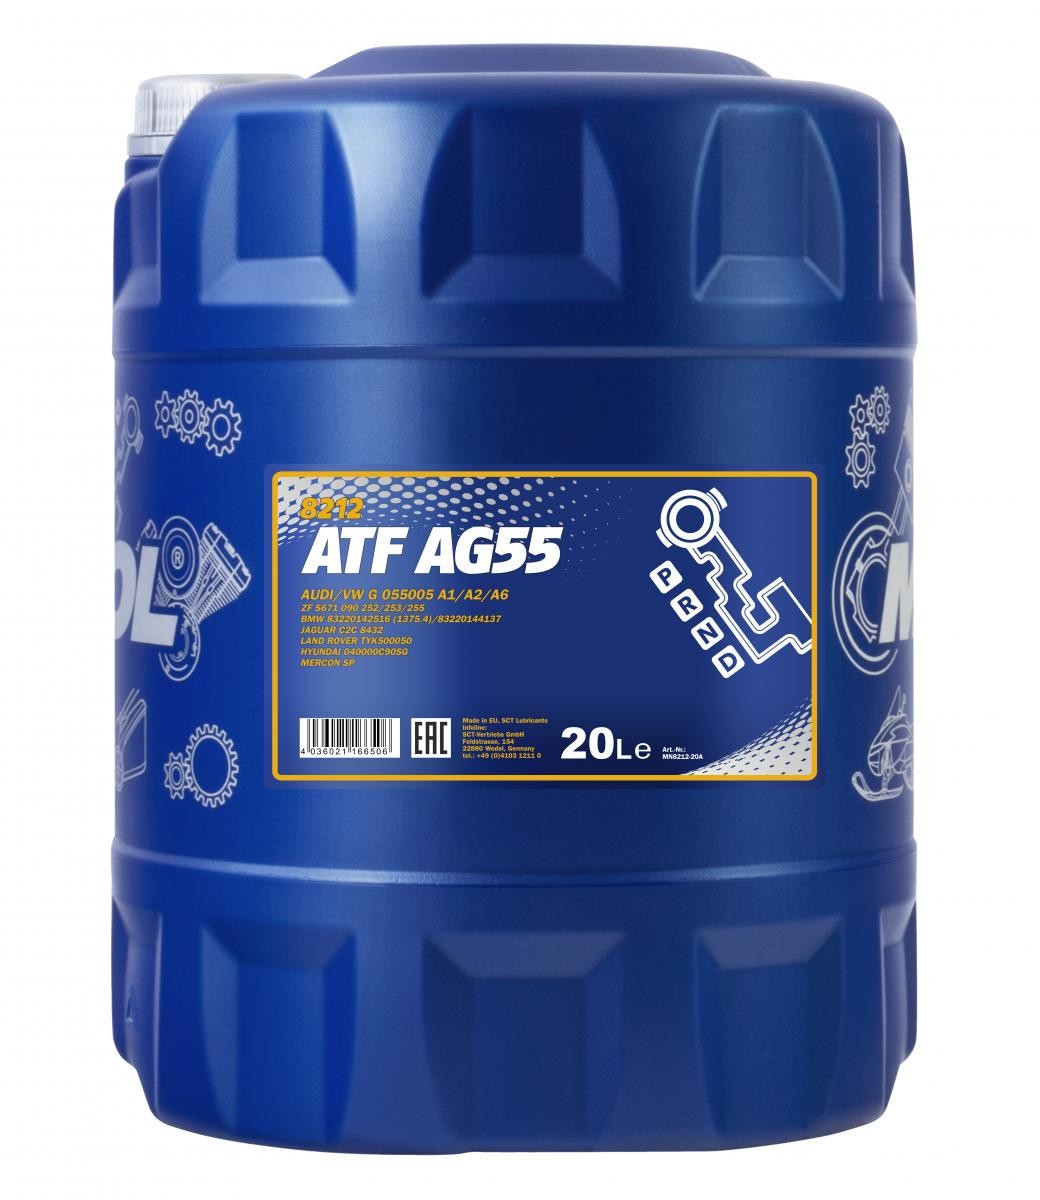 Mannol 8212 ATF AG55 Automatikgetriebeöl 20 Liter